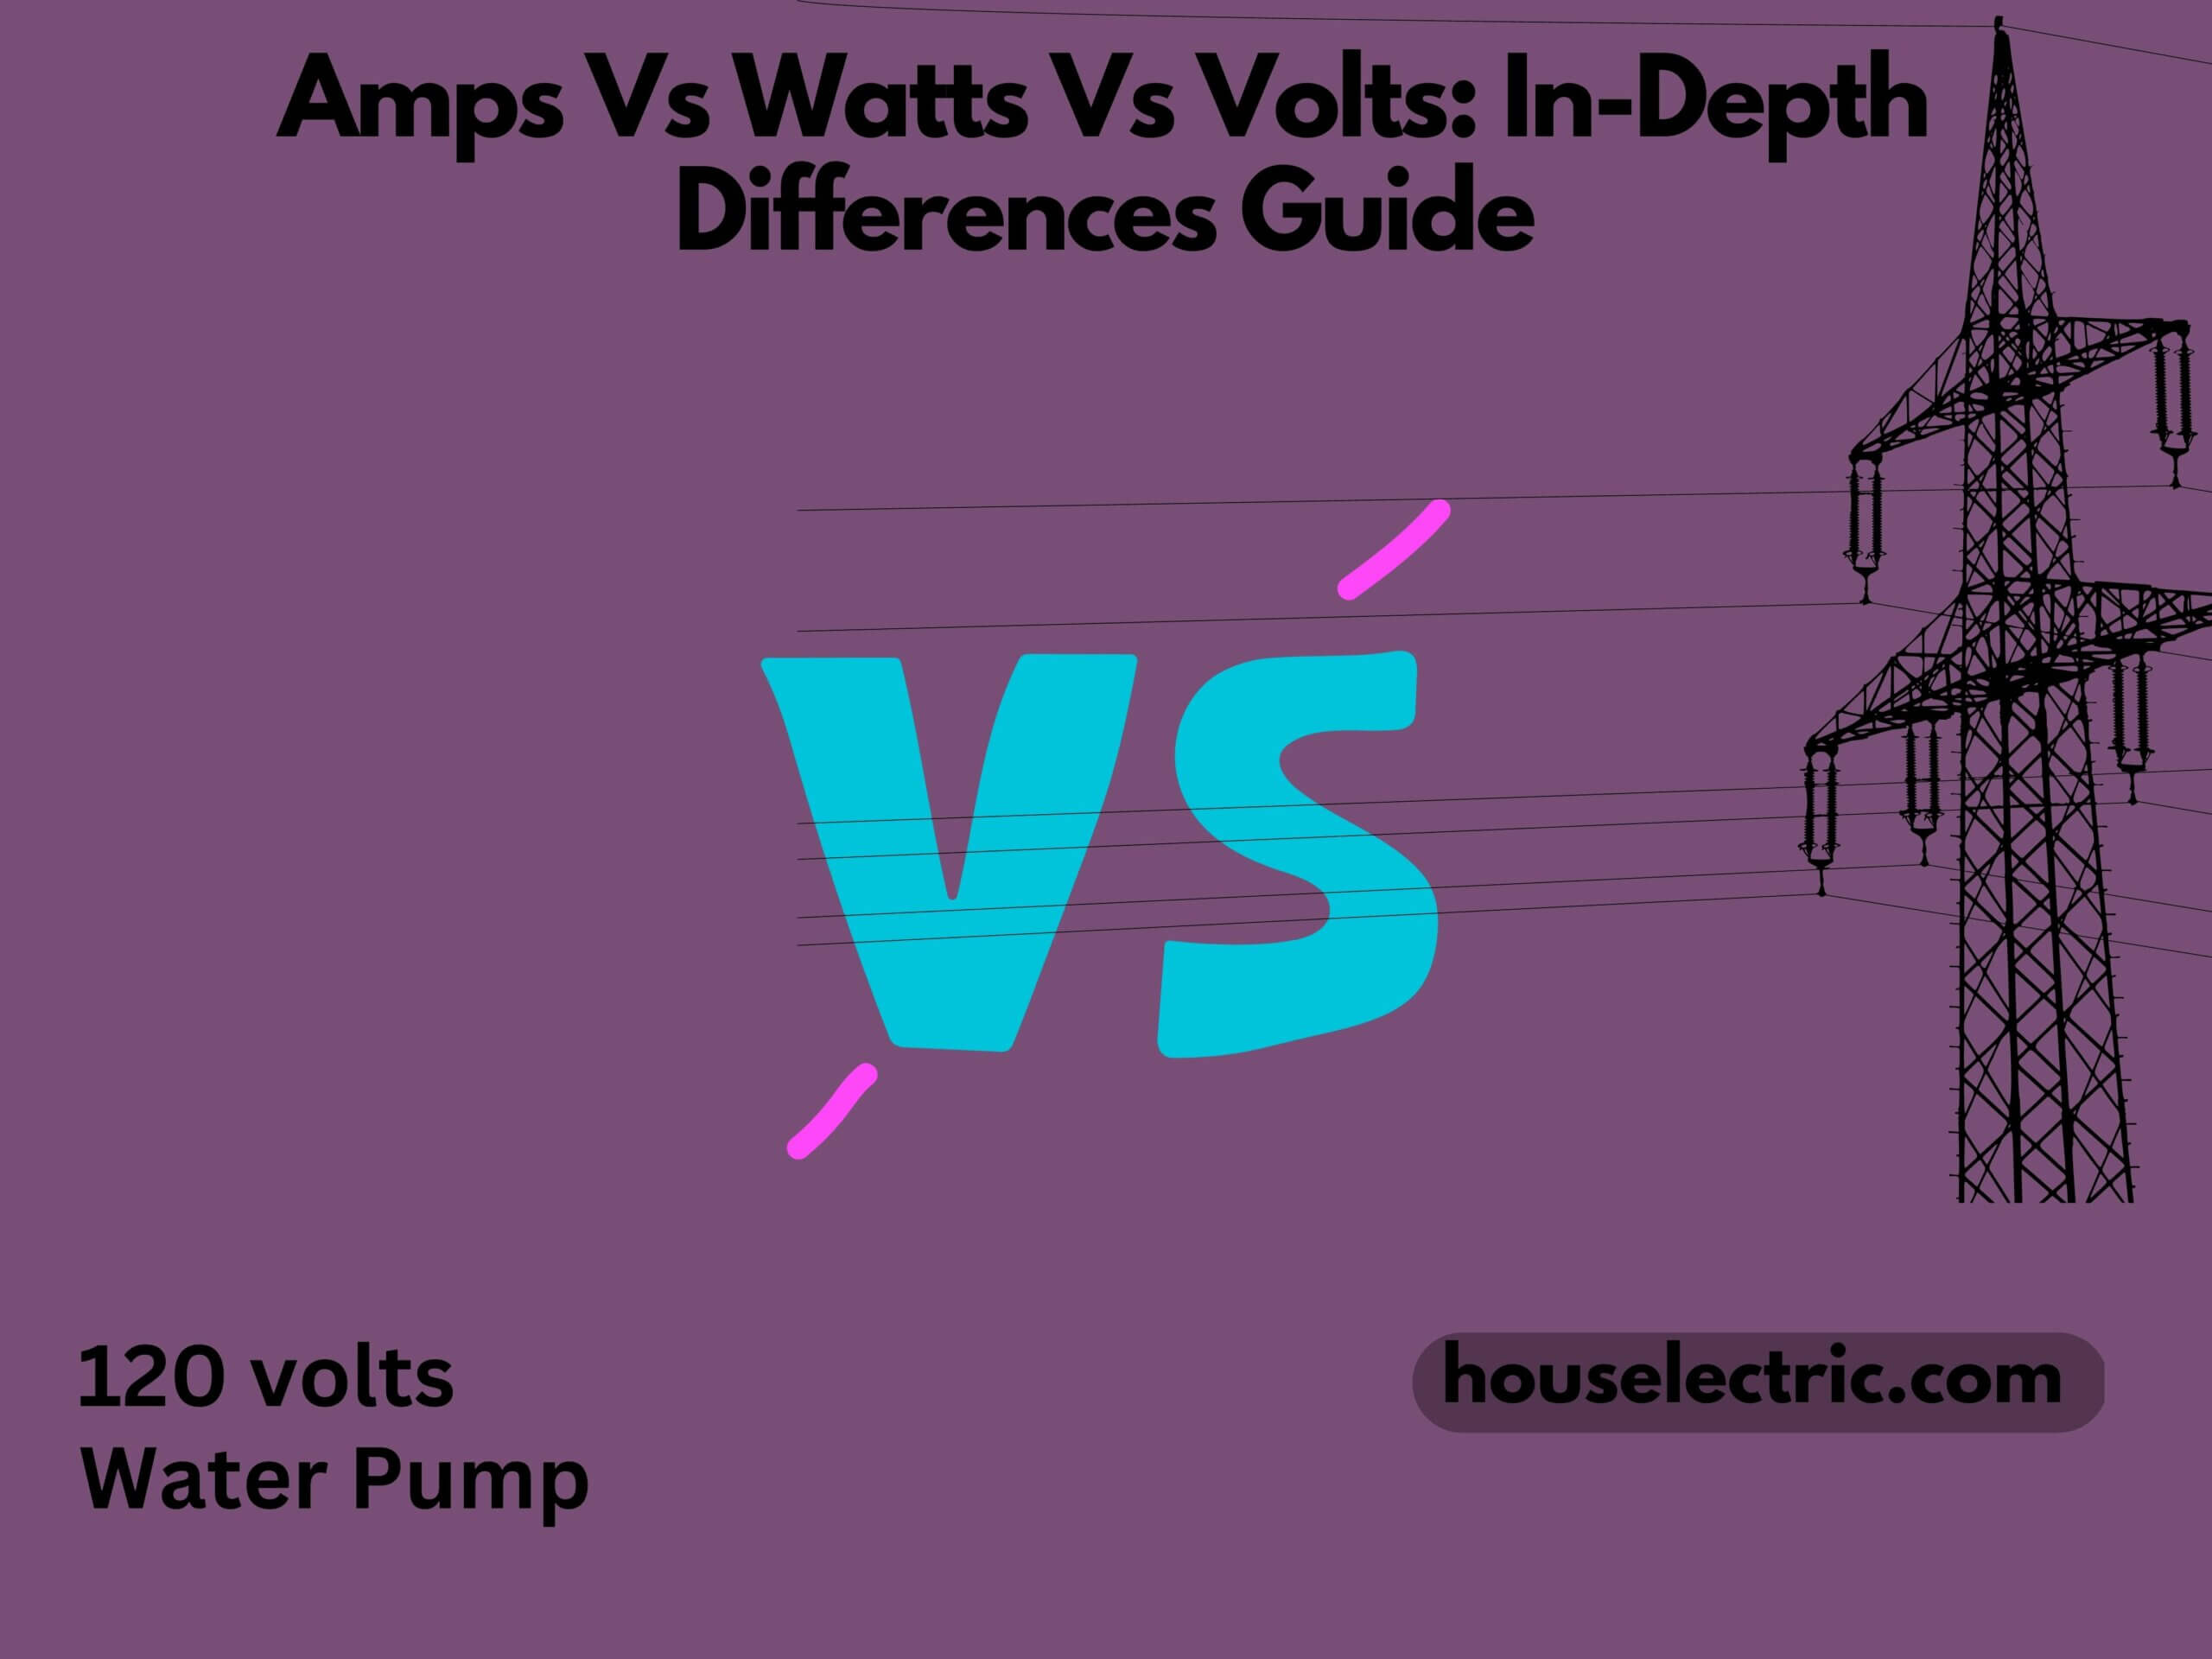 Amps Vs Watts Vs Volts